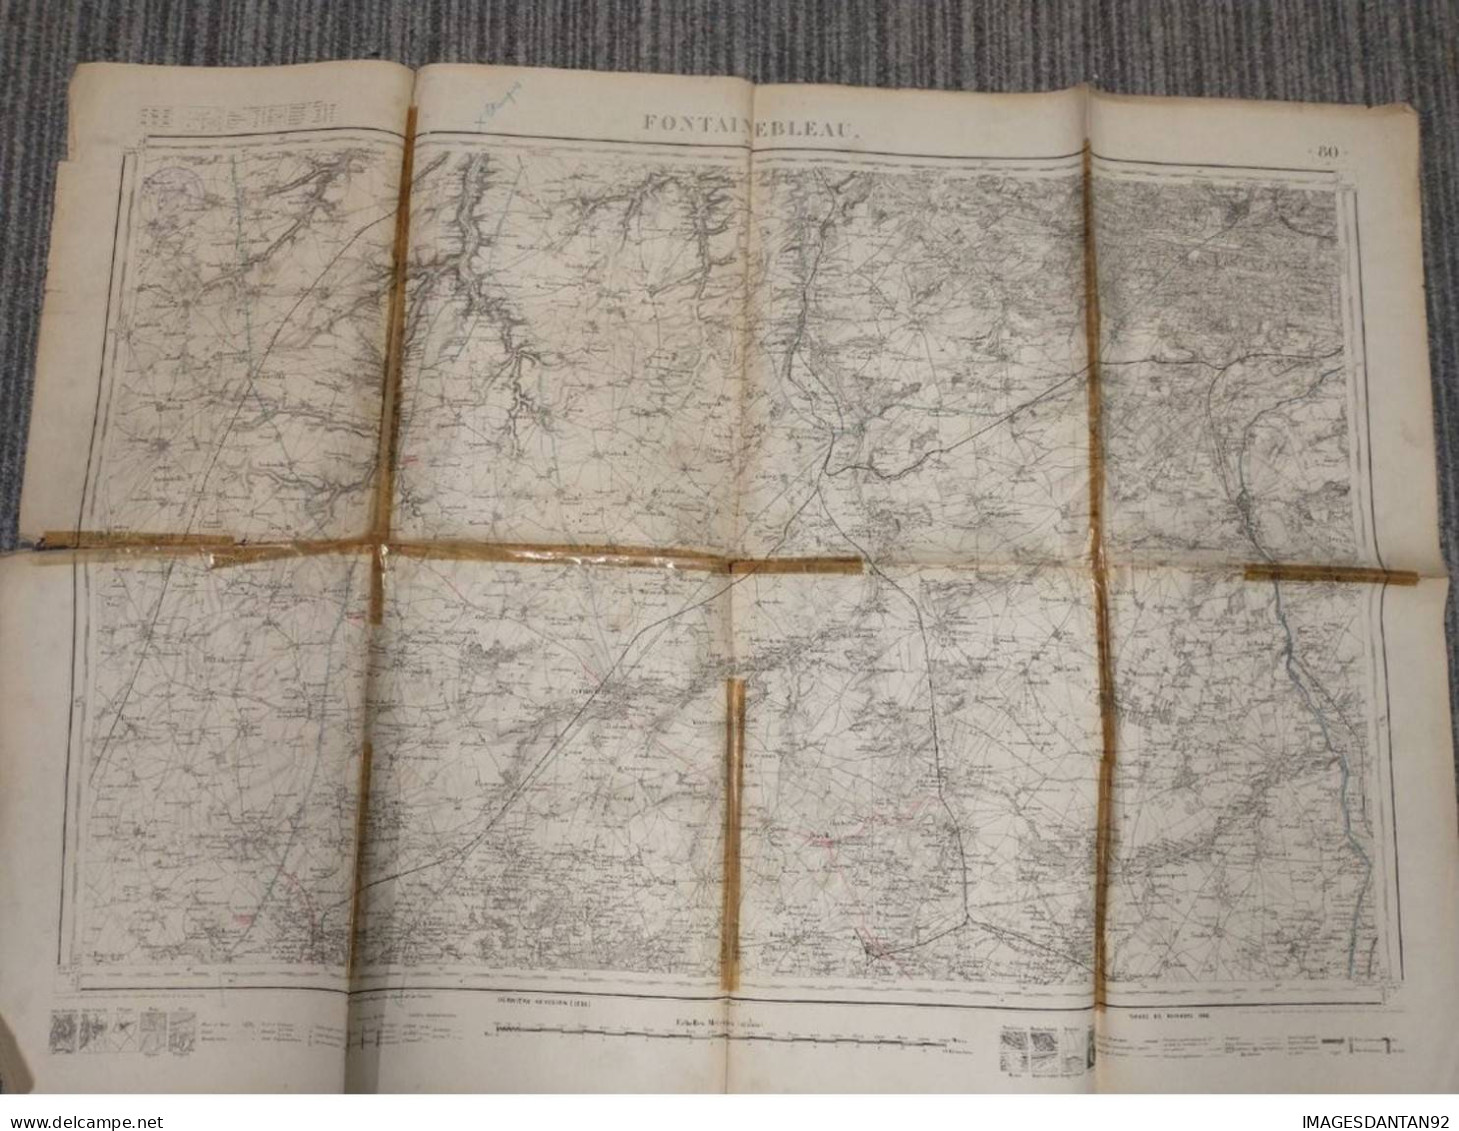 77 FONTAINEBLEAU GRAND PLAN DE 1886 LEVEE PAR OFFICIERS CORPS D ETAT MAJOR DE 1839  CACHET STEAM YACHT DAUPHIN CAPITAINE - Mapas Topográficas